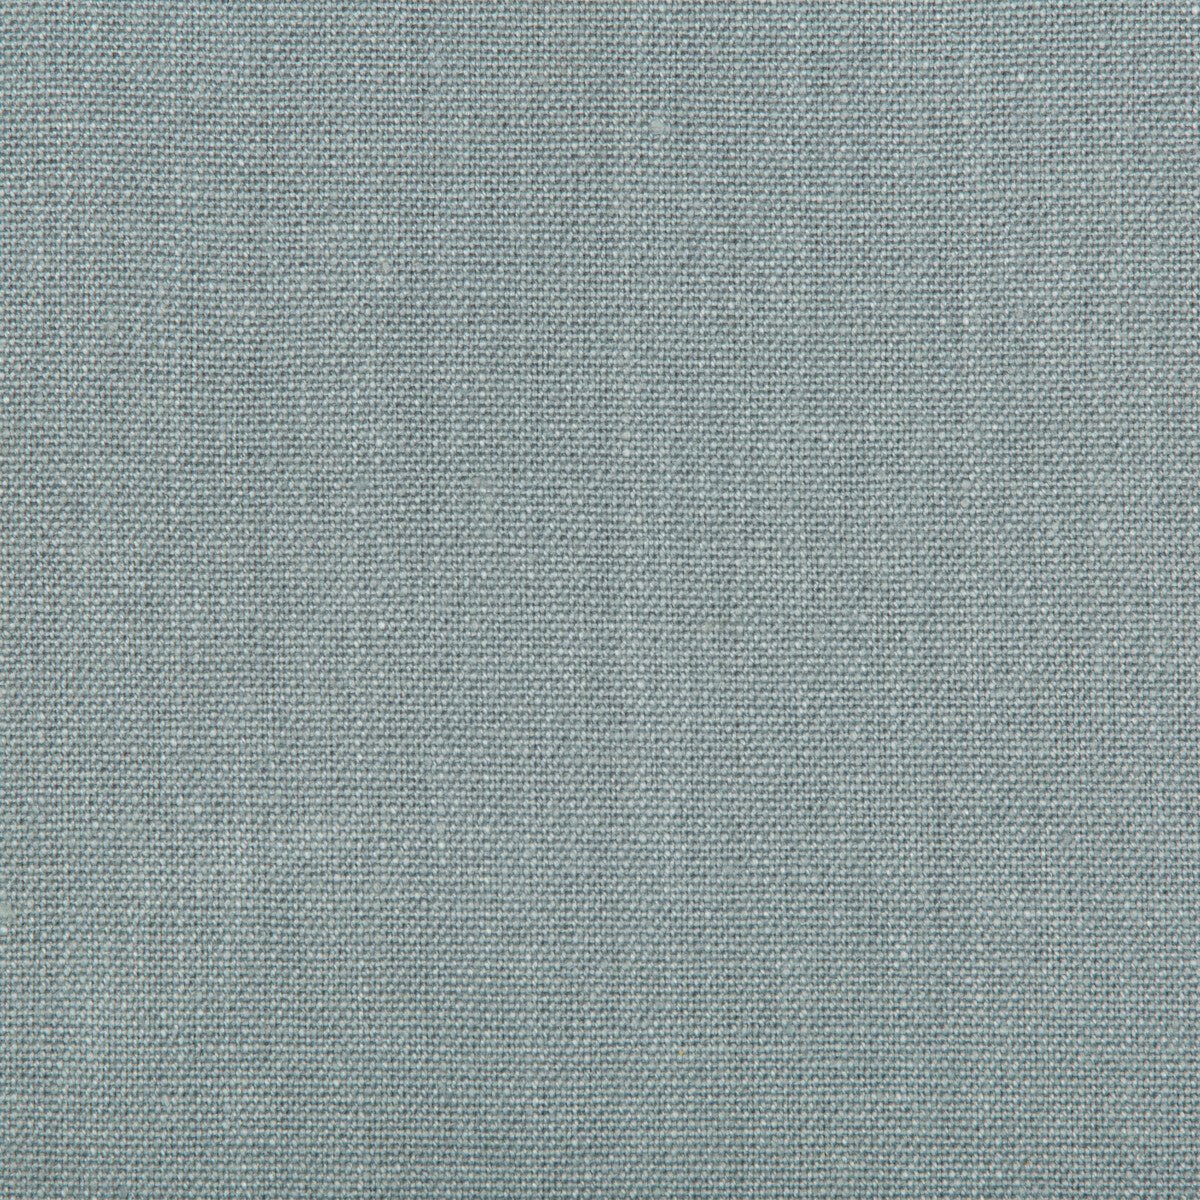 Kravet Basics fabric in 30421-511 color - pattern 30421.511.0 - by Kravet Basics